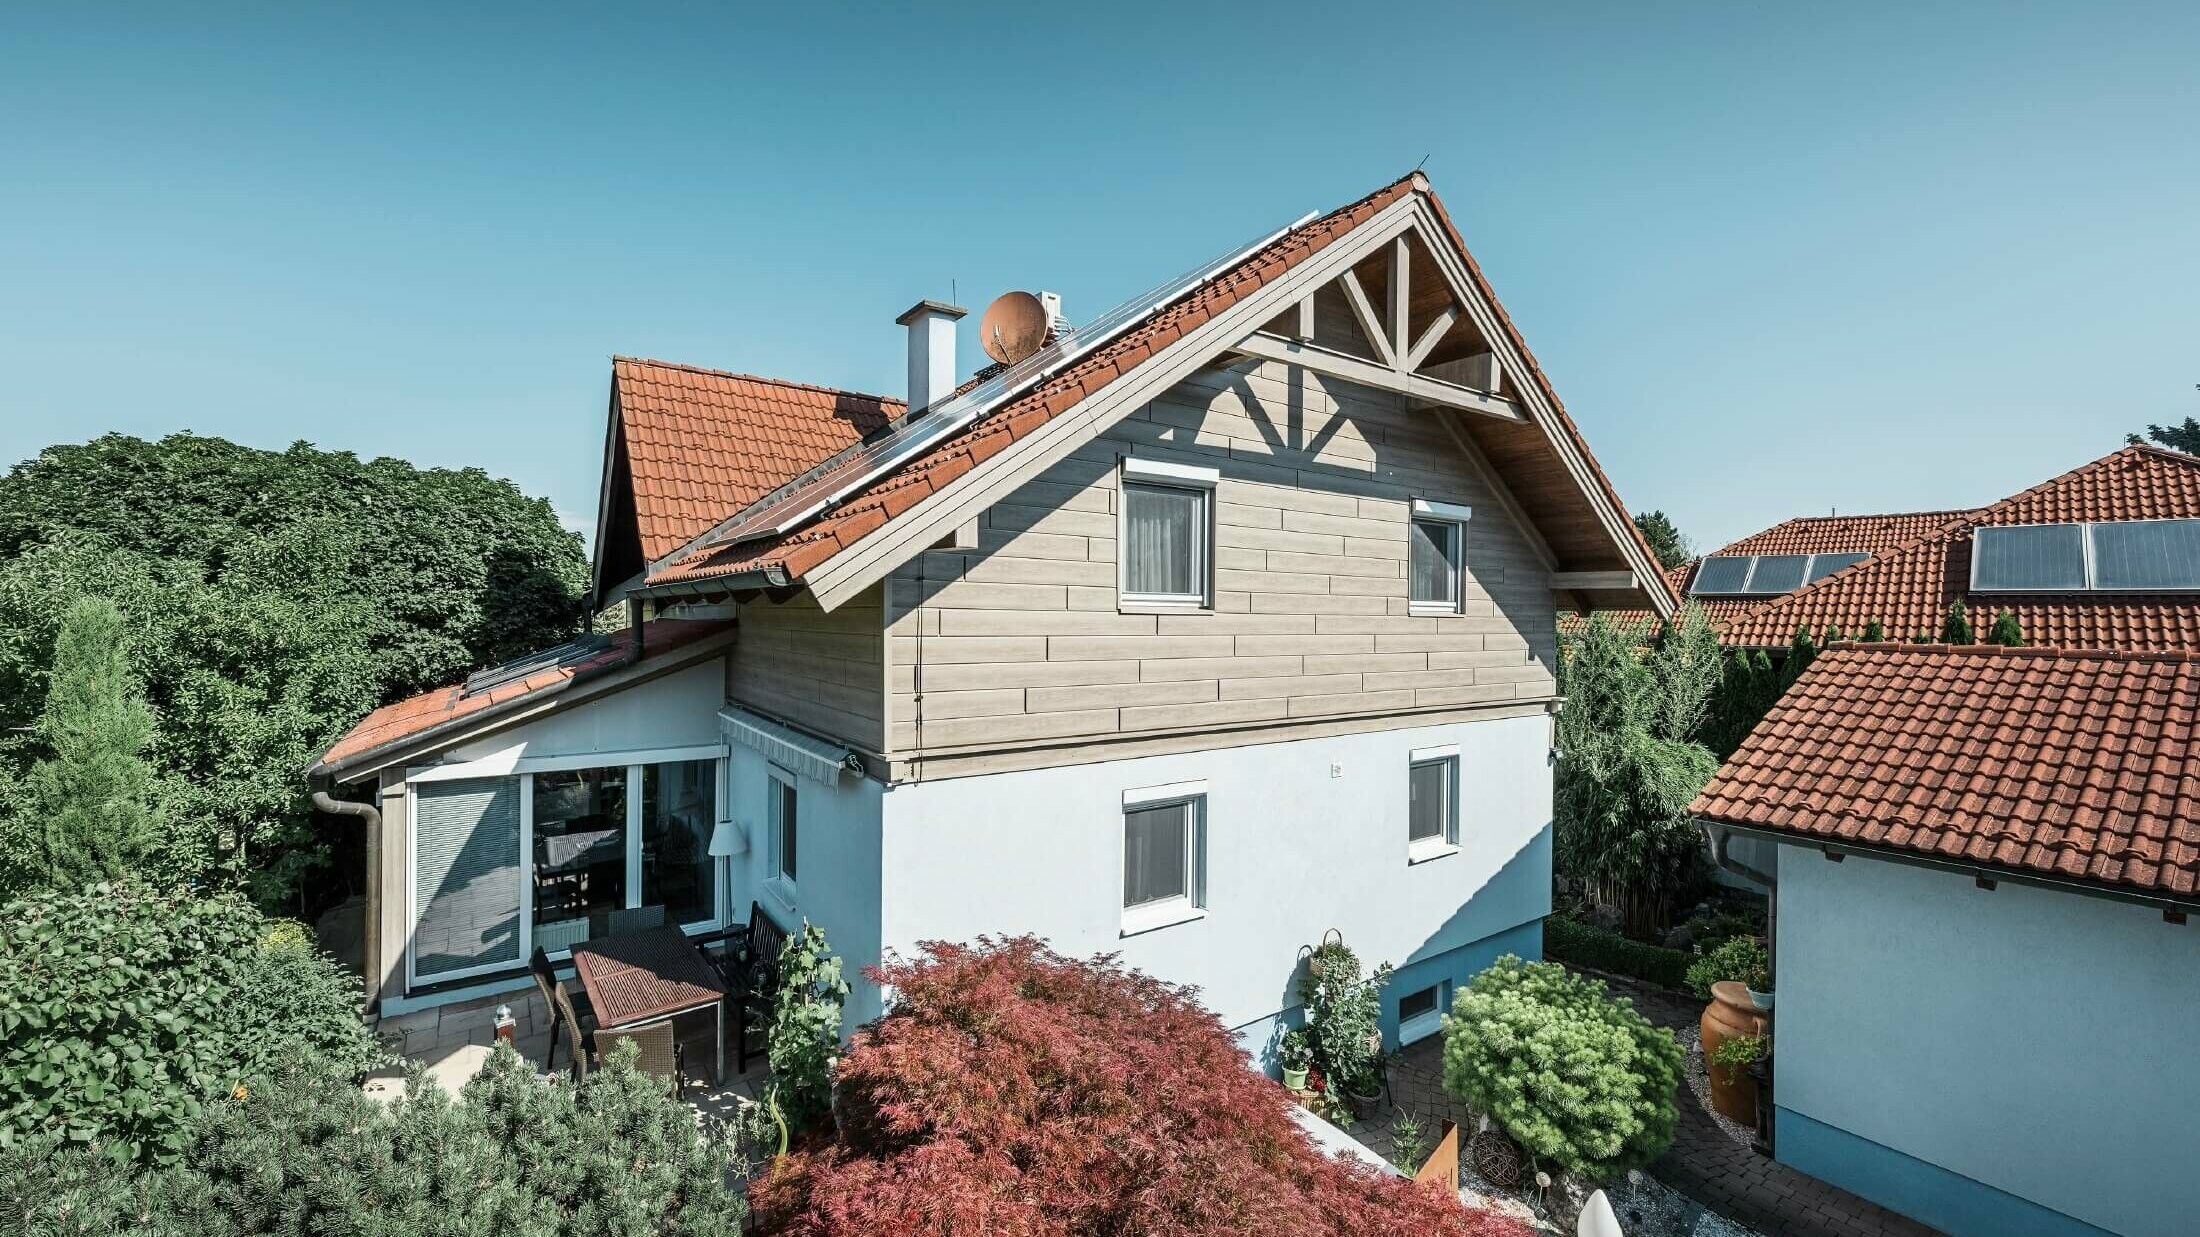 Facciata di una casa unifamiliare, rivestita al piano superiore con doghe effetto legno di color rovere grigio